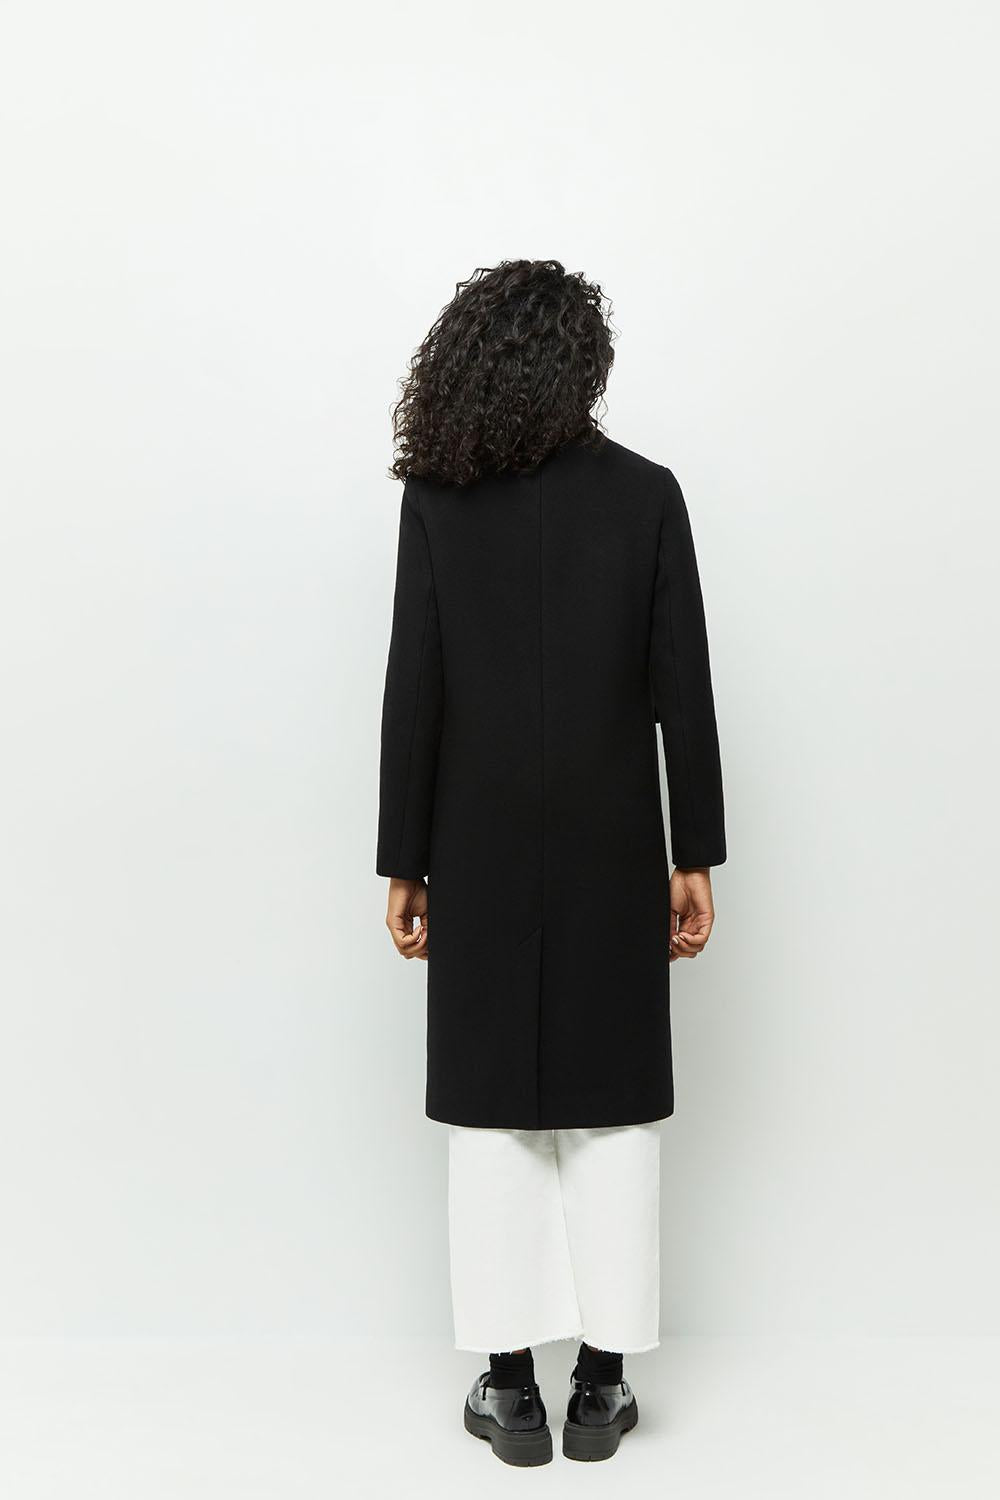 DUSTIN - Manteau noir avec bord-côte au col